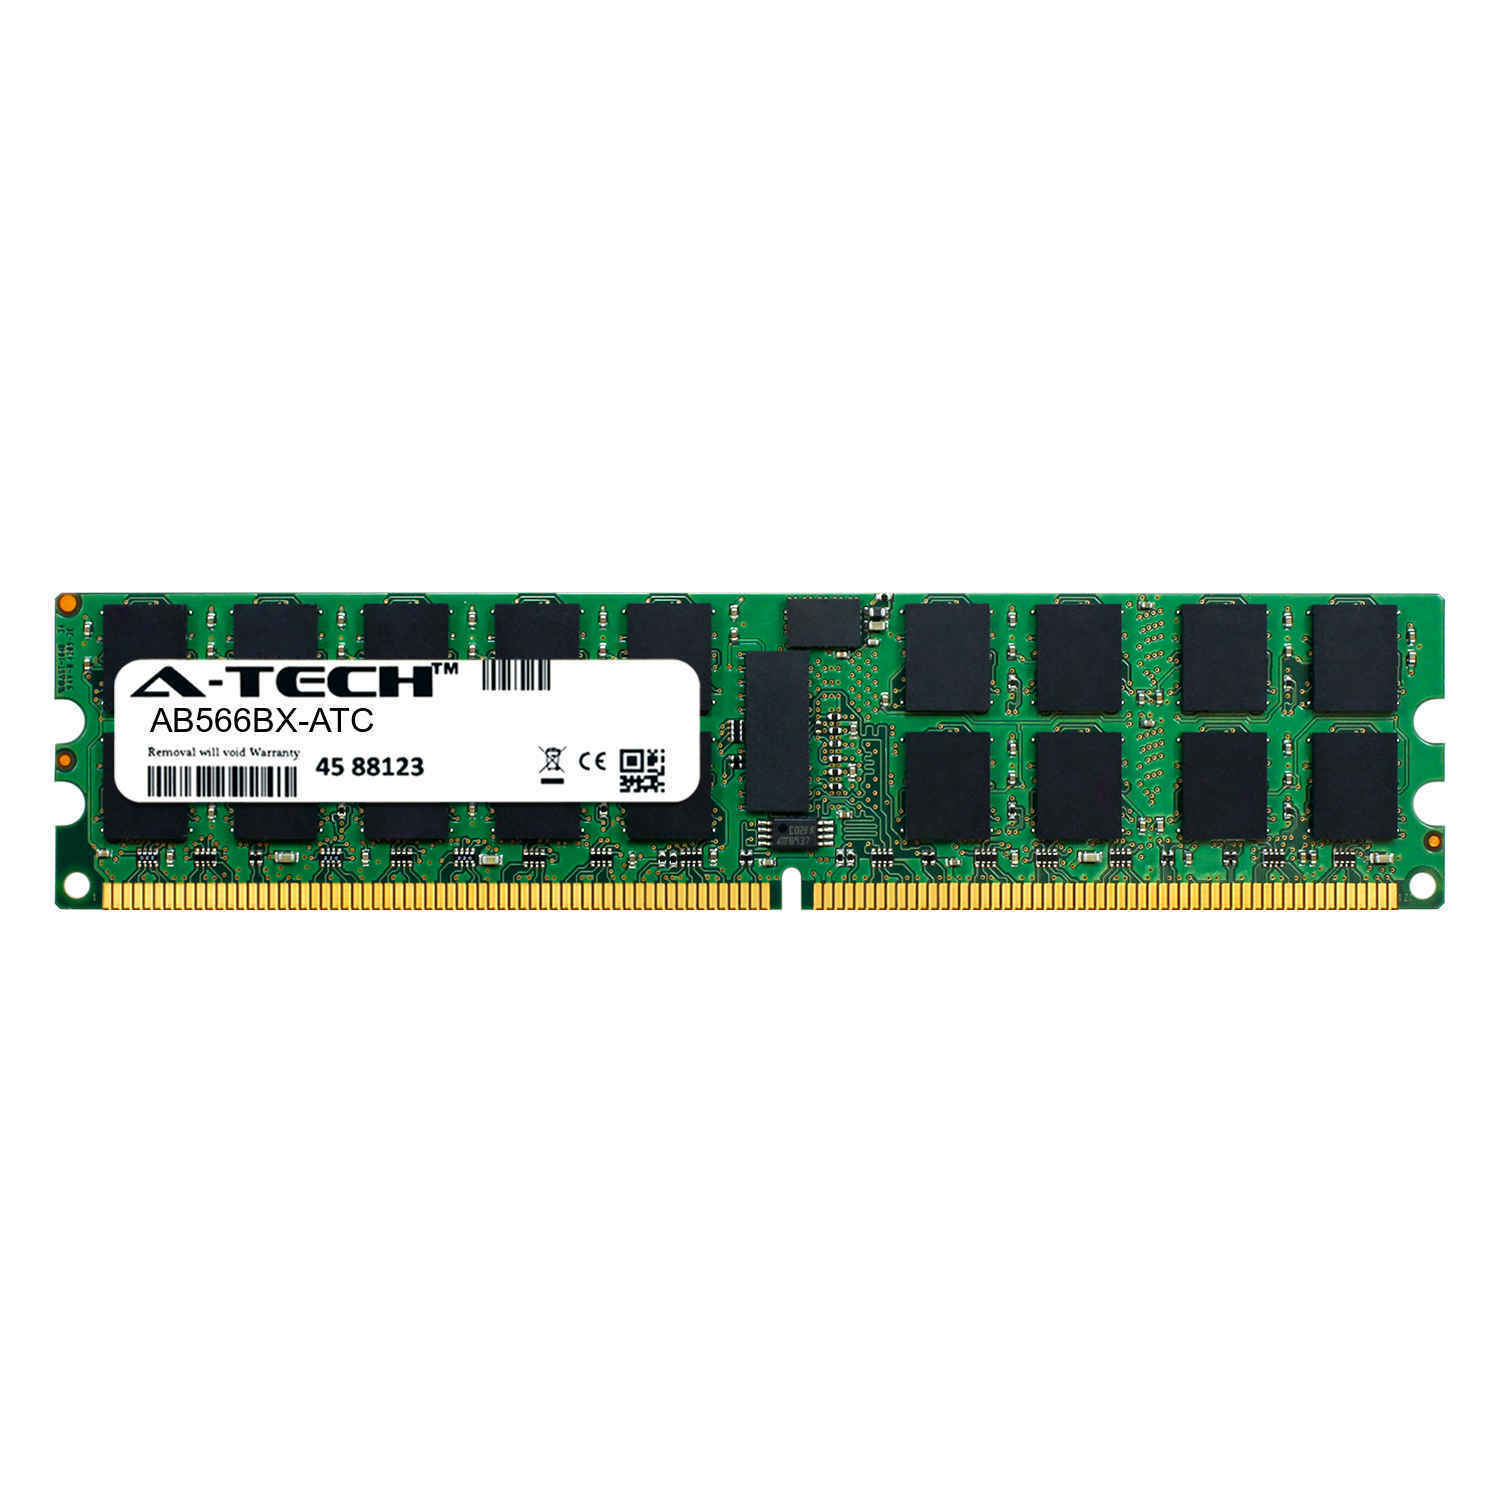 4GB DDR2 PC2-6400R 800MHz ECC RDIMM (HP AB566BX Equivalent) Server Memory RAM